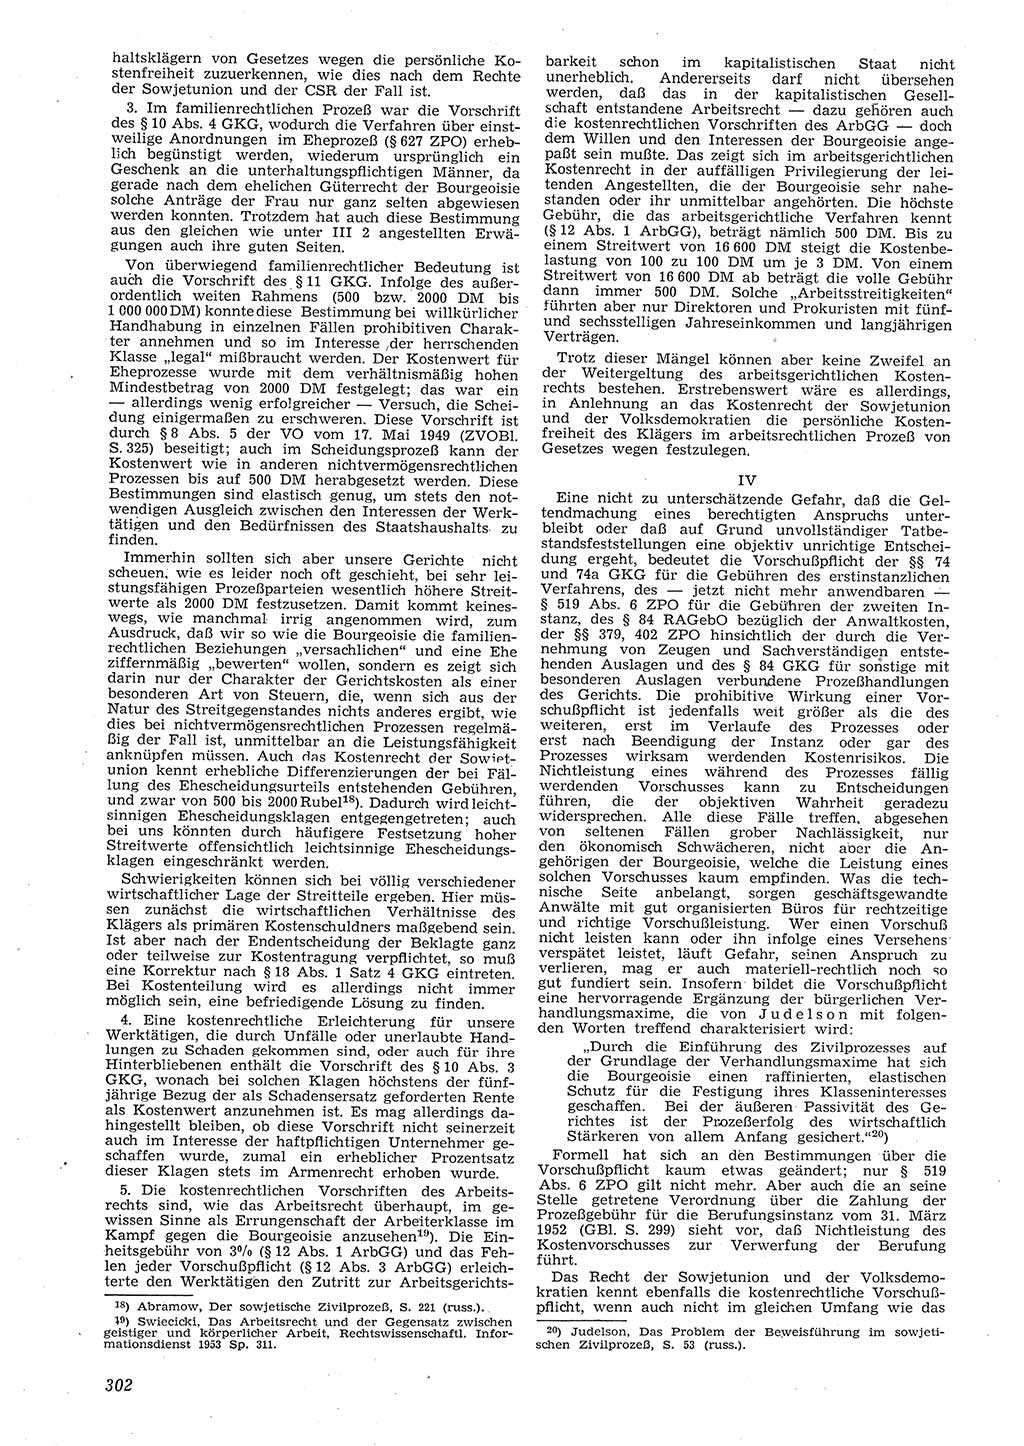 Neue Justiz (NJ), Zeitschrift für Recht und Rechtswissenschaft [Deutsche Demokratische Republik (DDR)], 8. Jahrgang 1954, Seite 302 (NJ DDR 1954, S. 302)